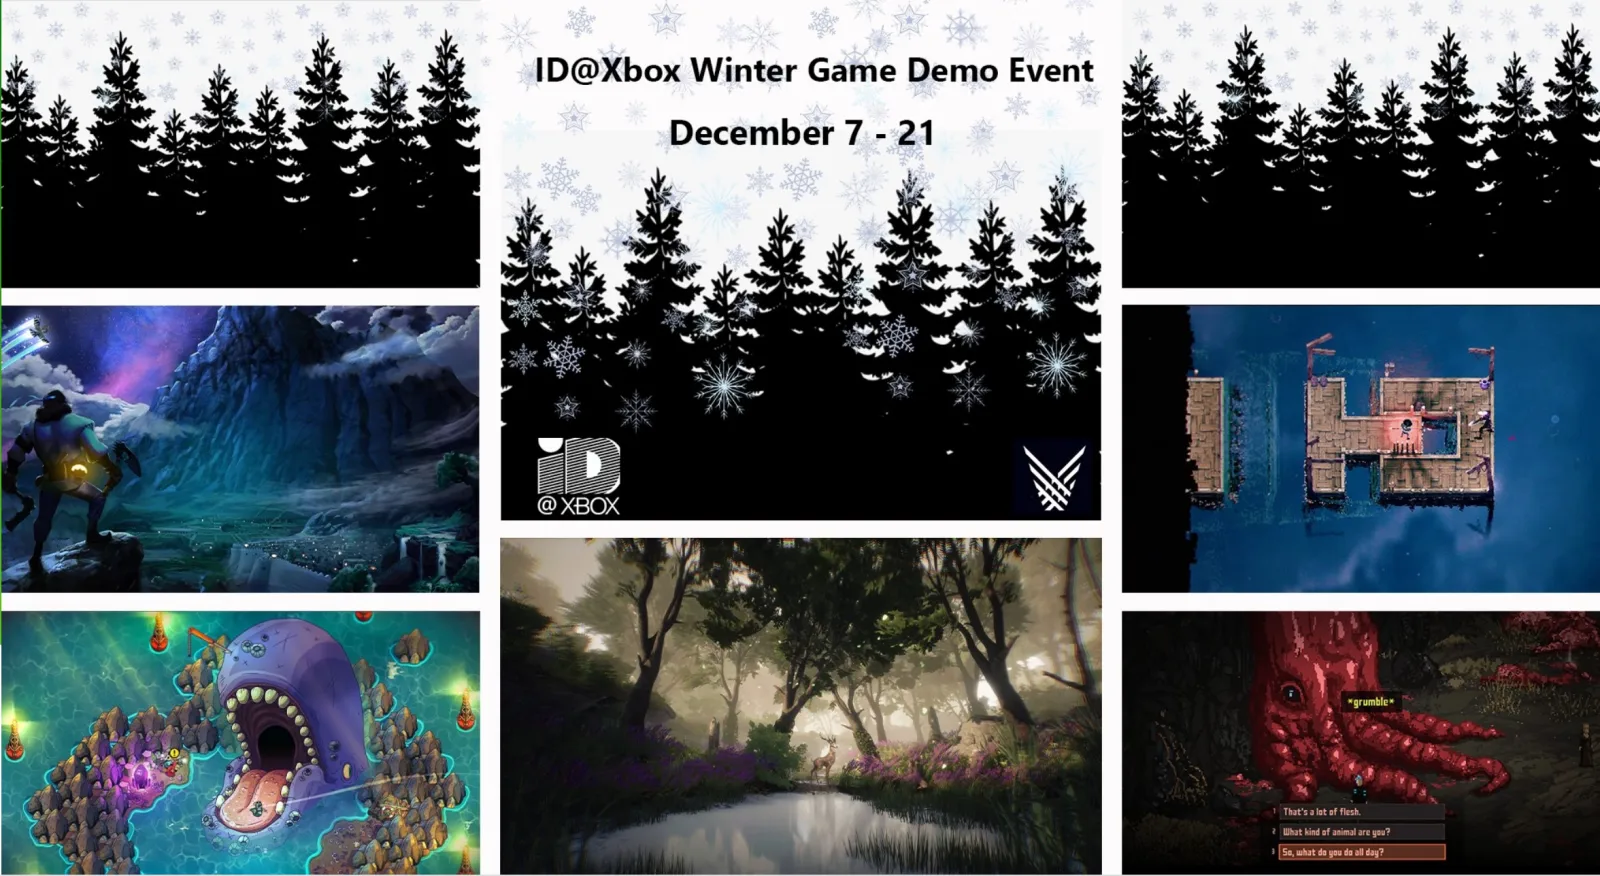 ID@Xbox冬季游戏节Demo展示活动将于12月7-21日举行